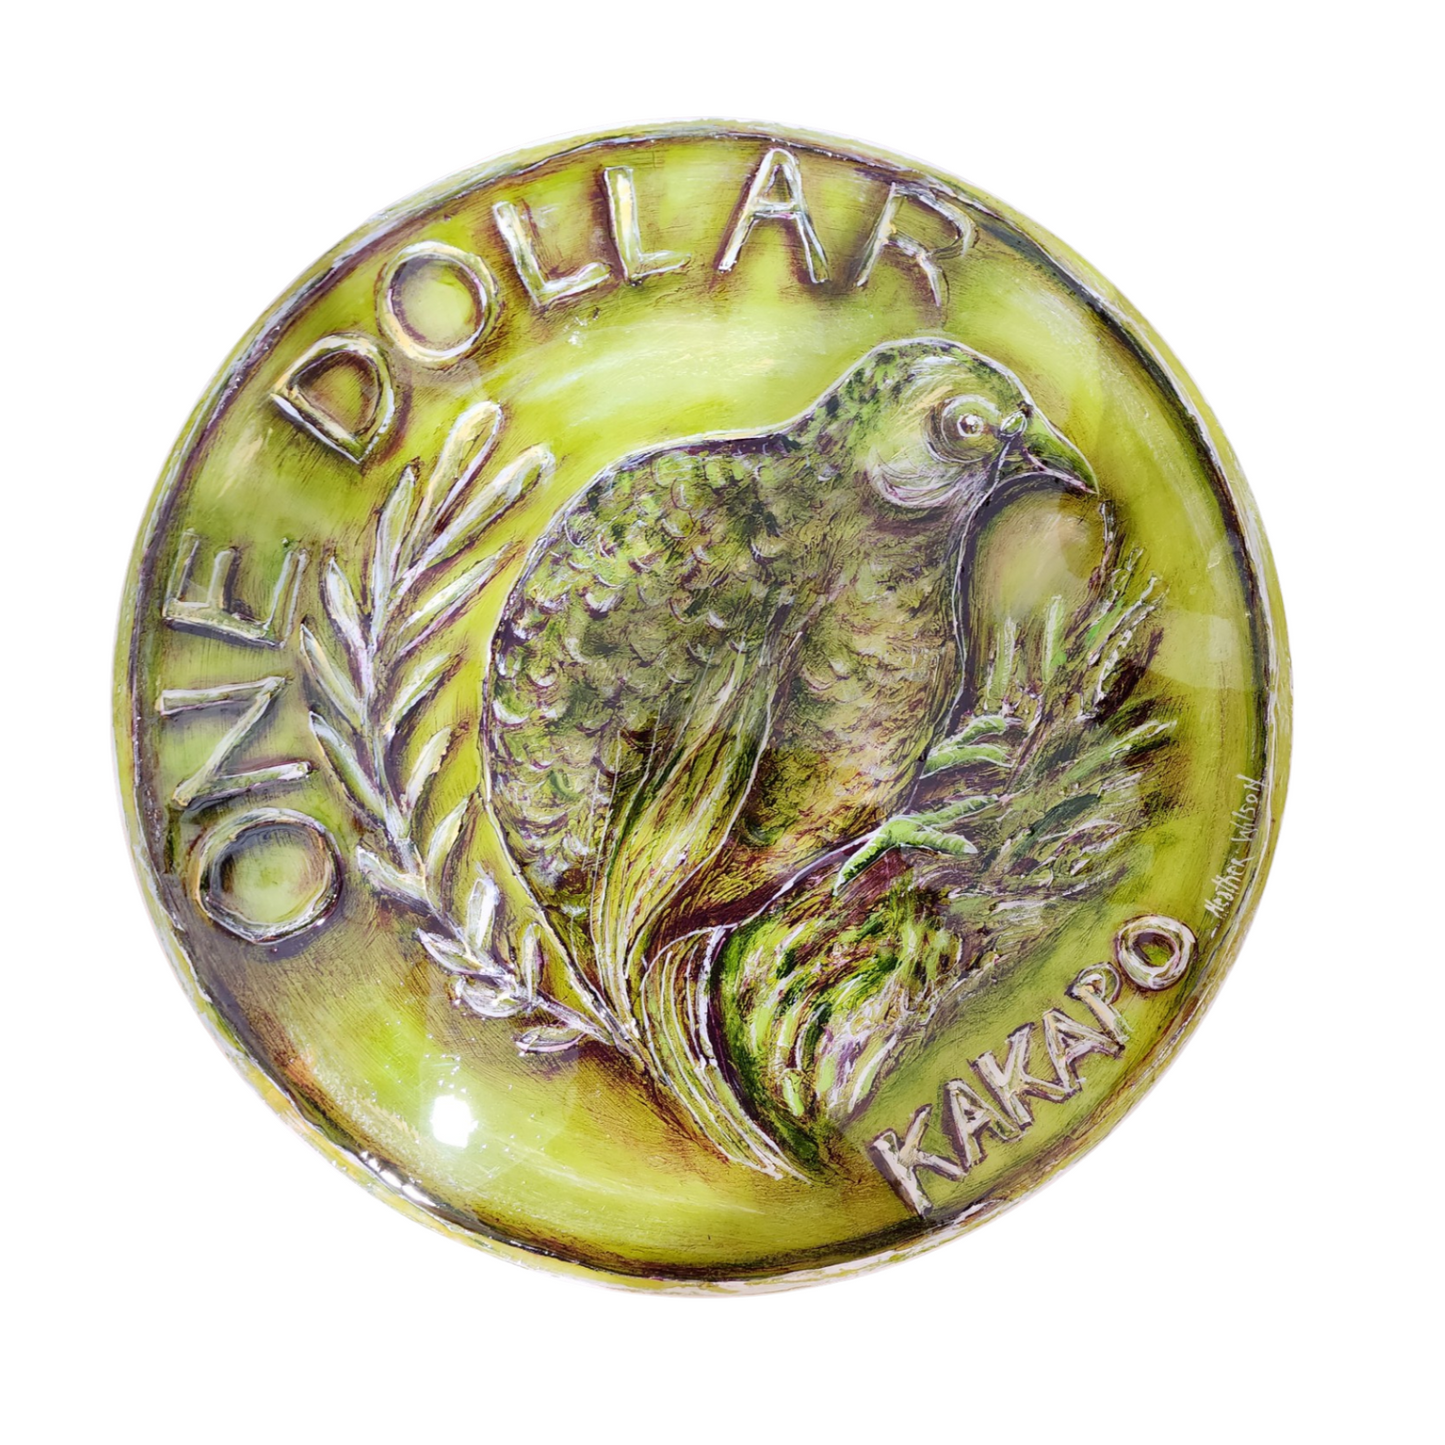 NZ Coins